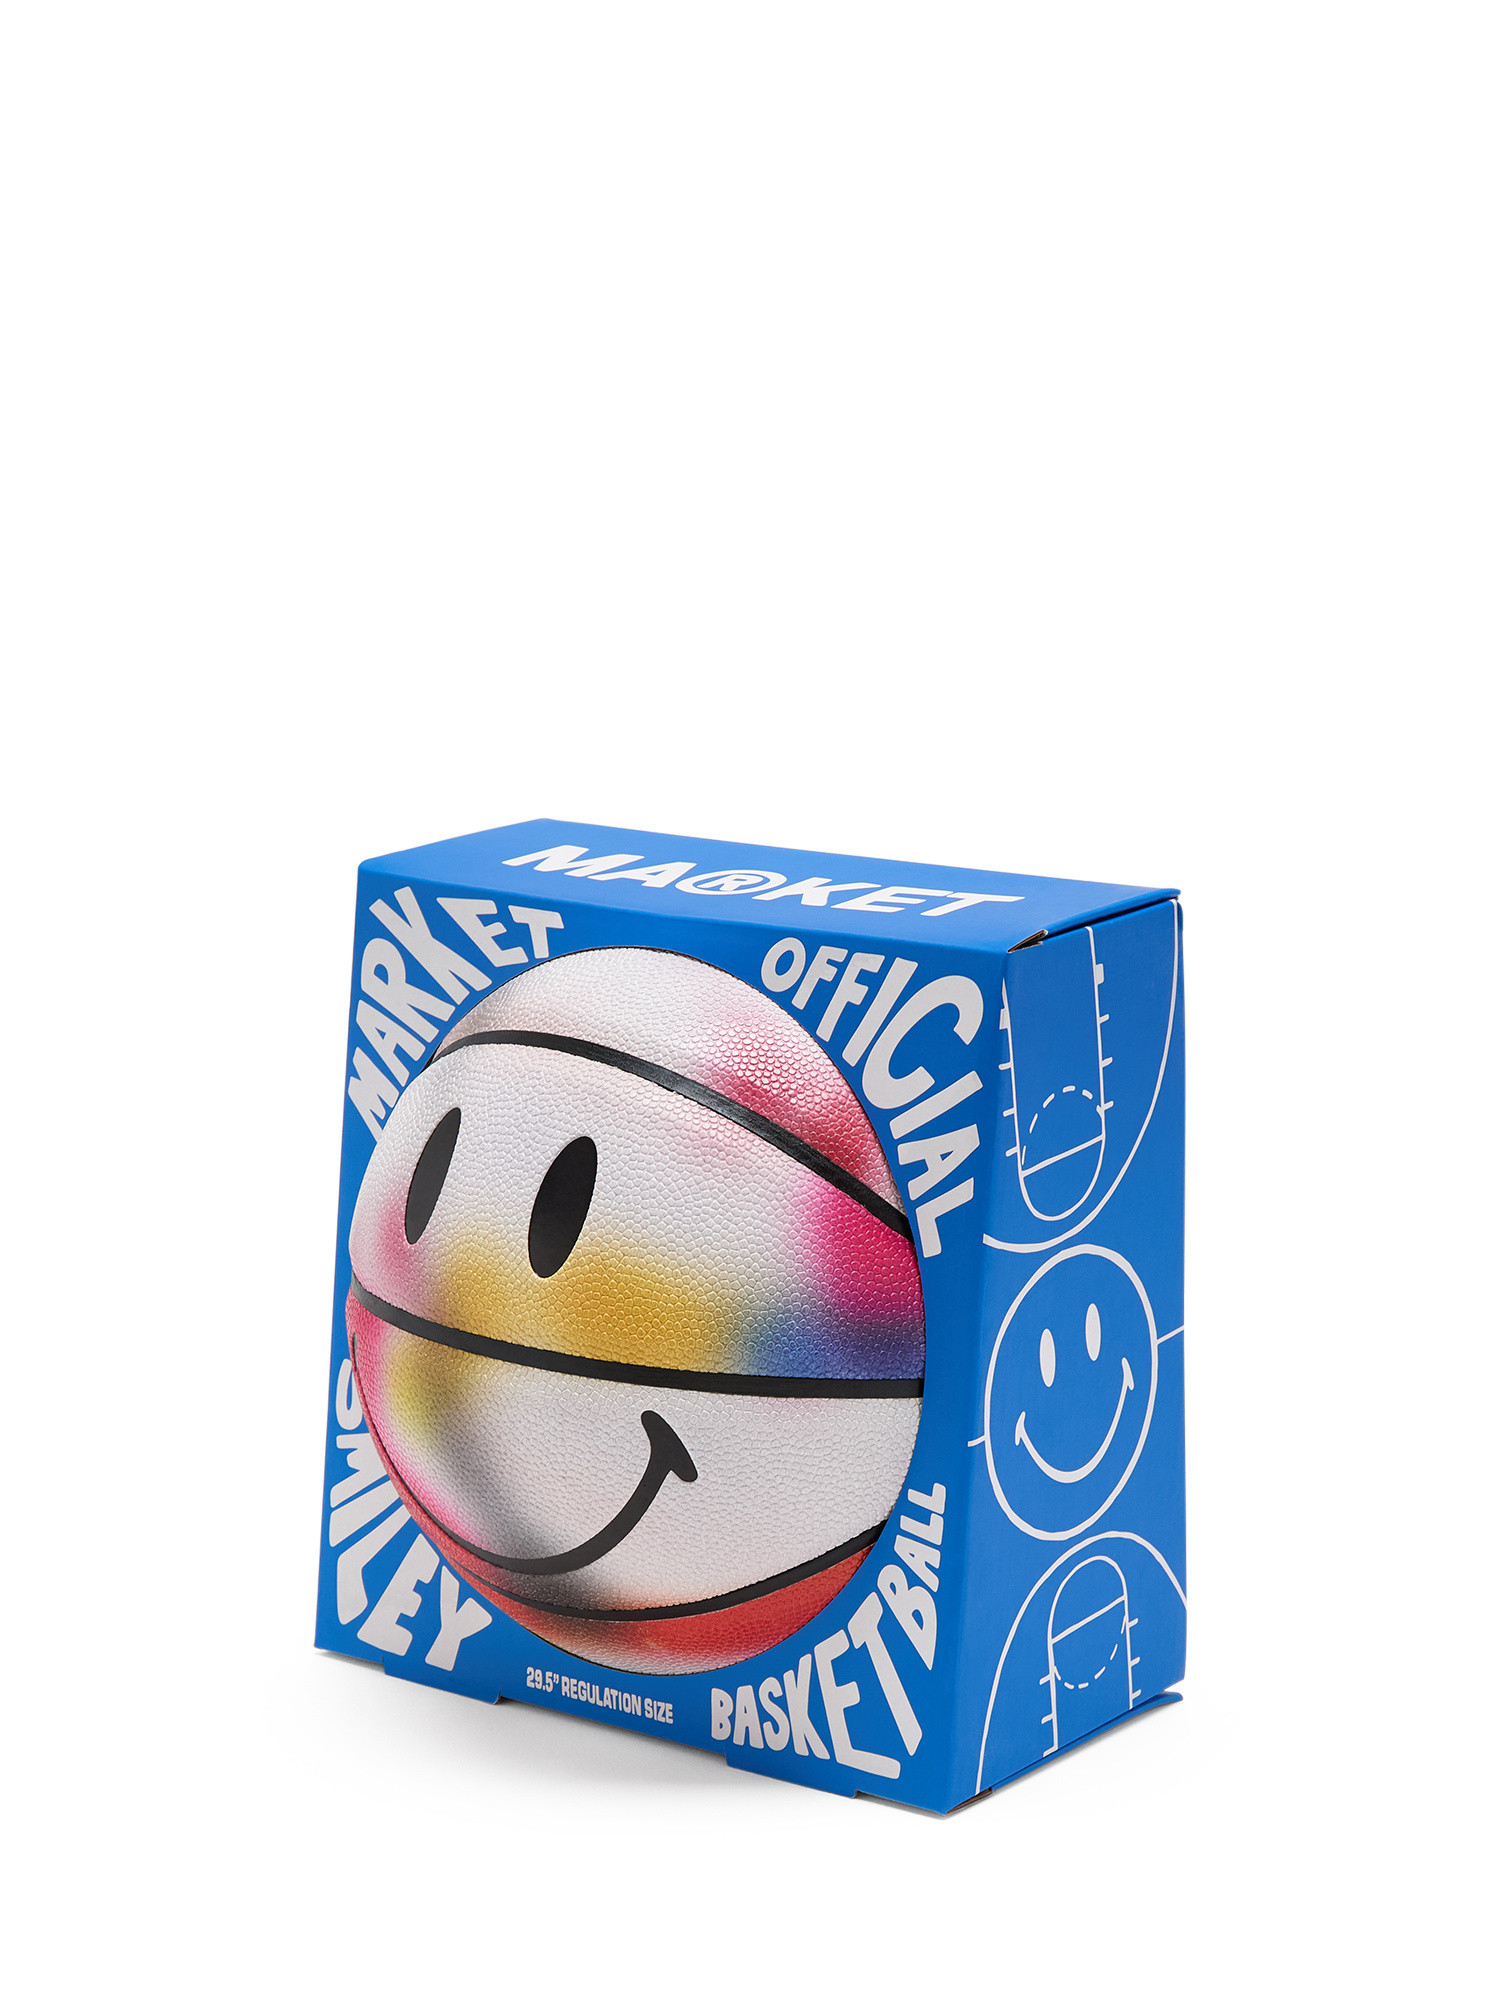 Market - Pallone da basket Smiley®, Multicolor, large image number 0